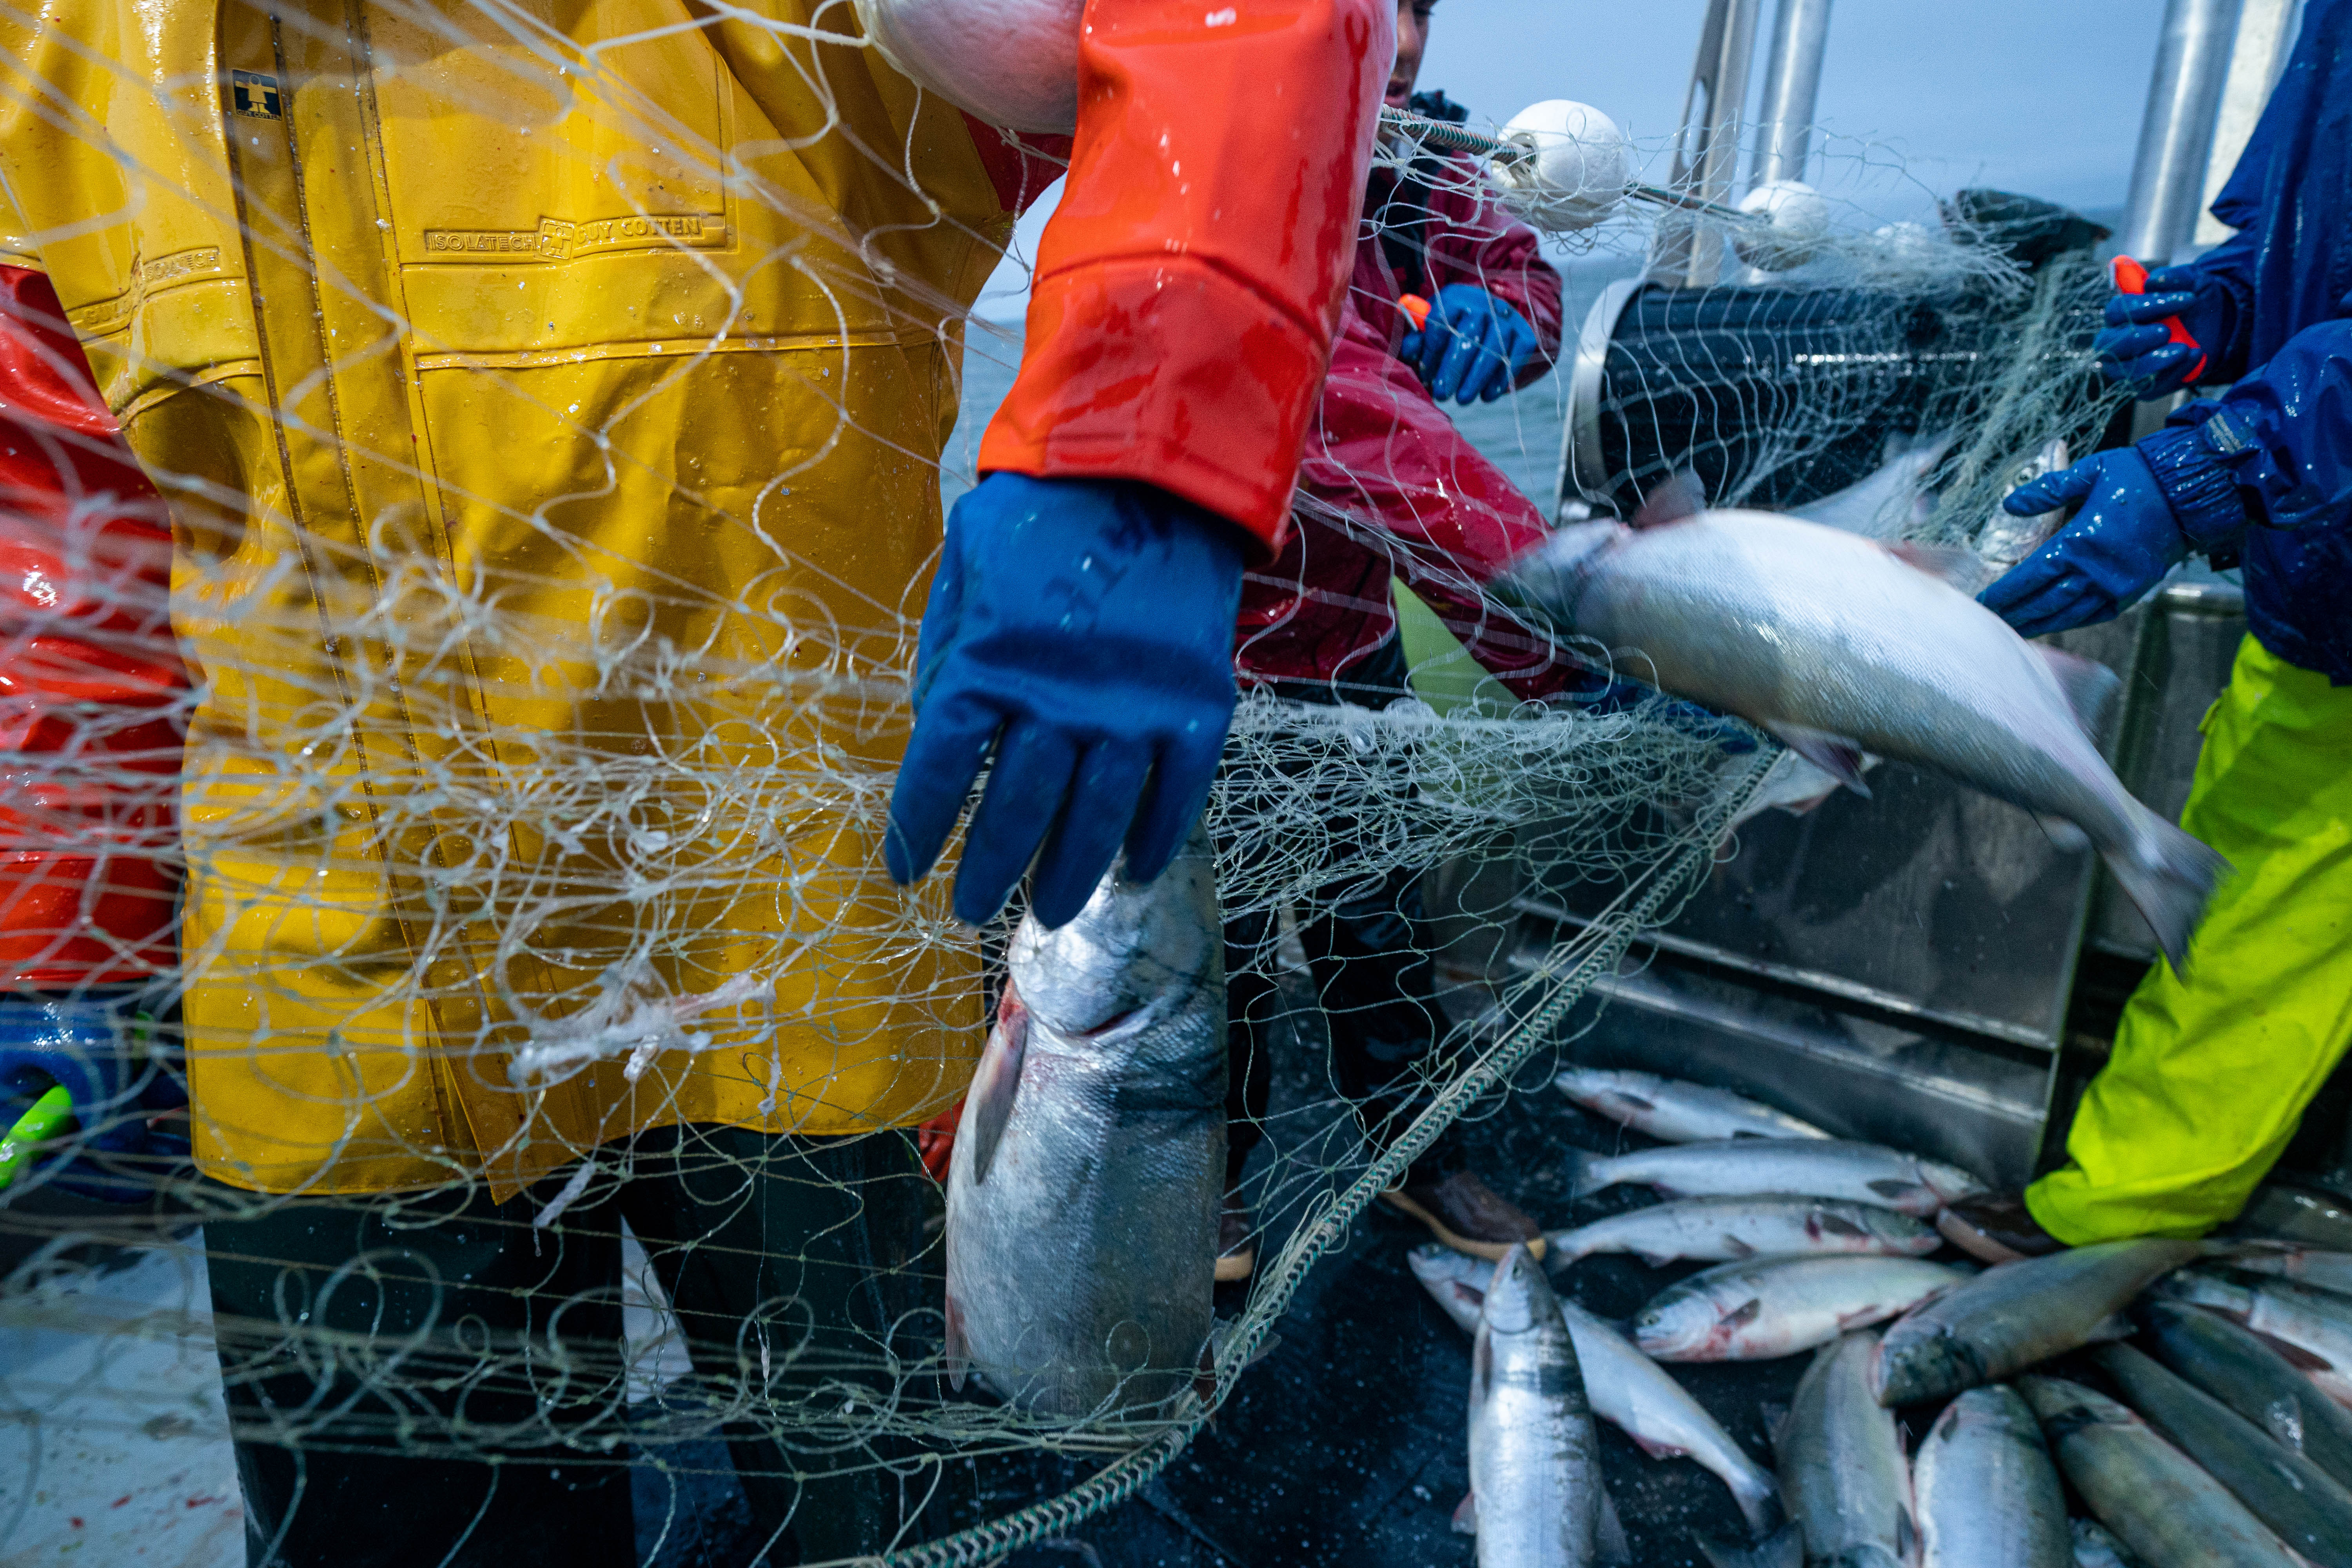 Alaska's salmon worth $720 million this year